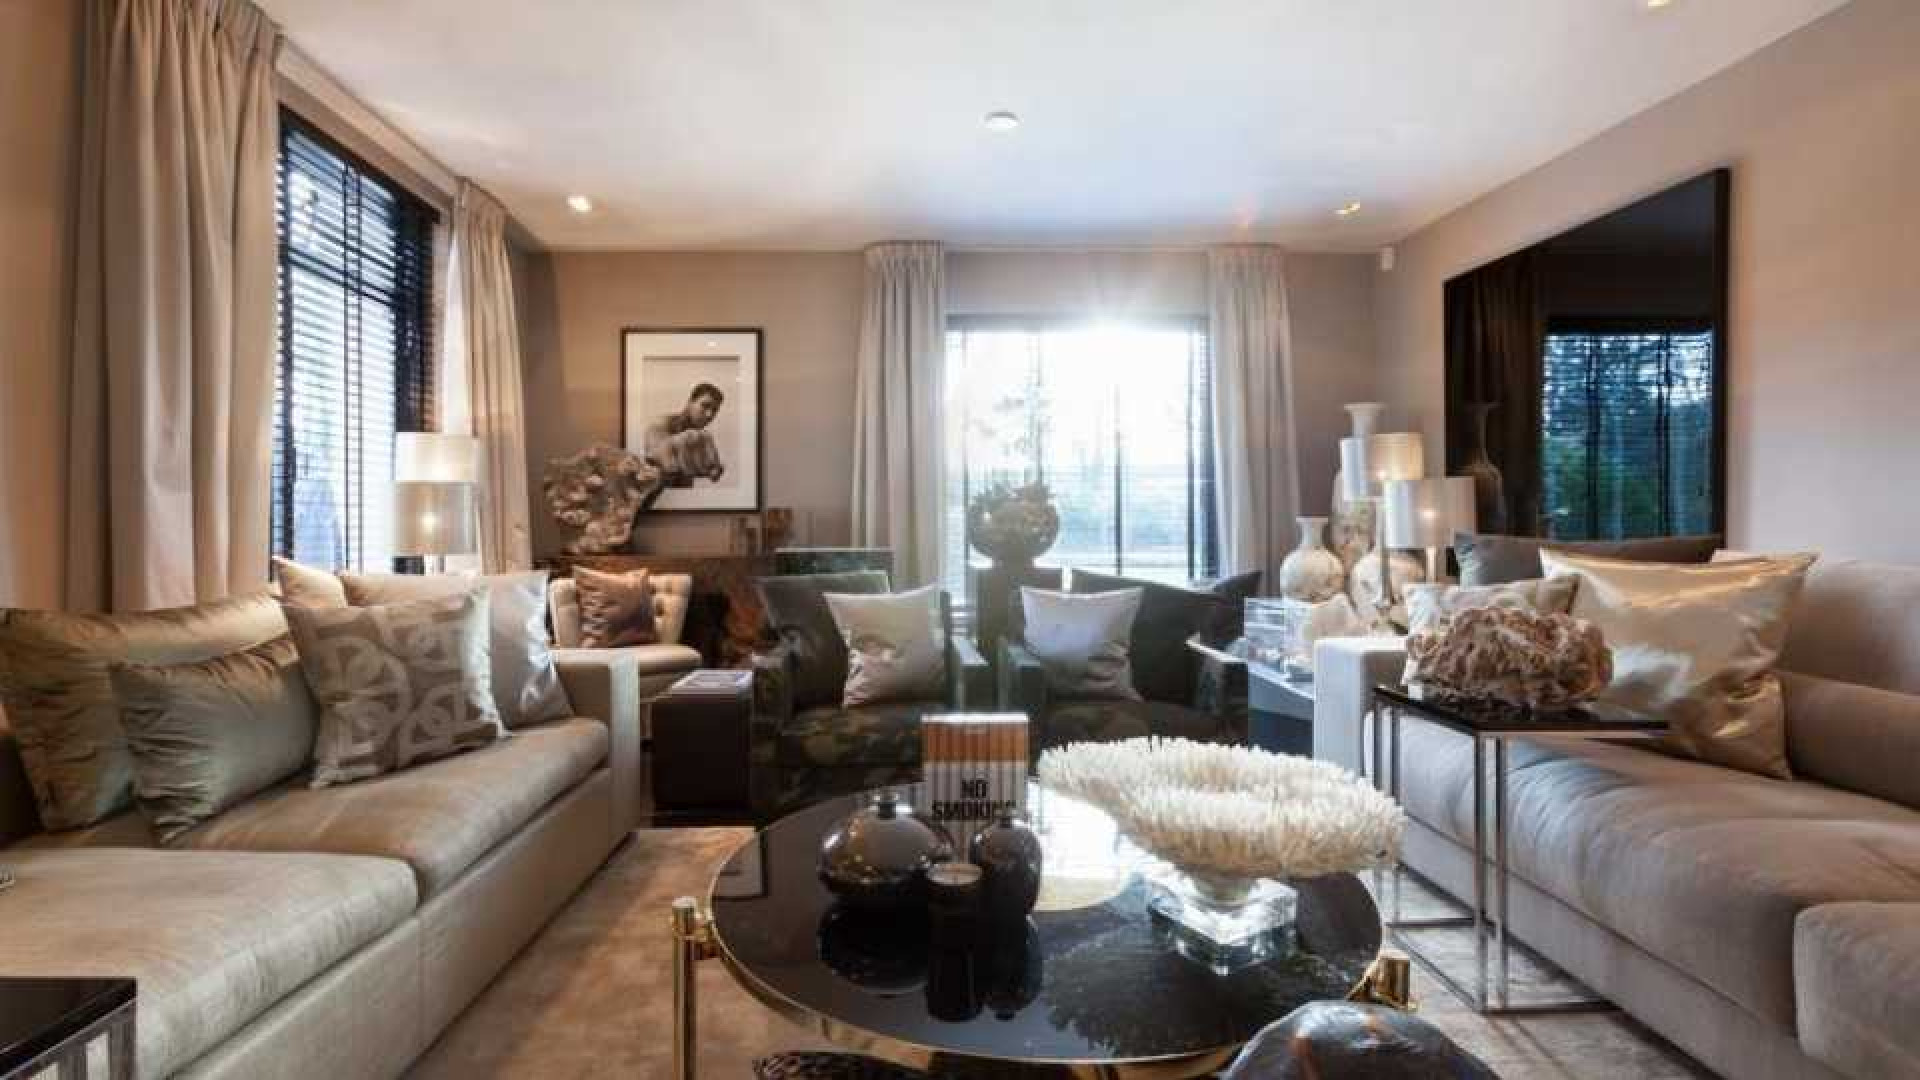 Top interieur stylist Eric Kuster zet zijn eigen droomvilla te koop. Zie foto's 4